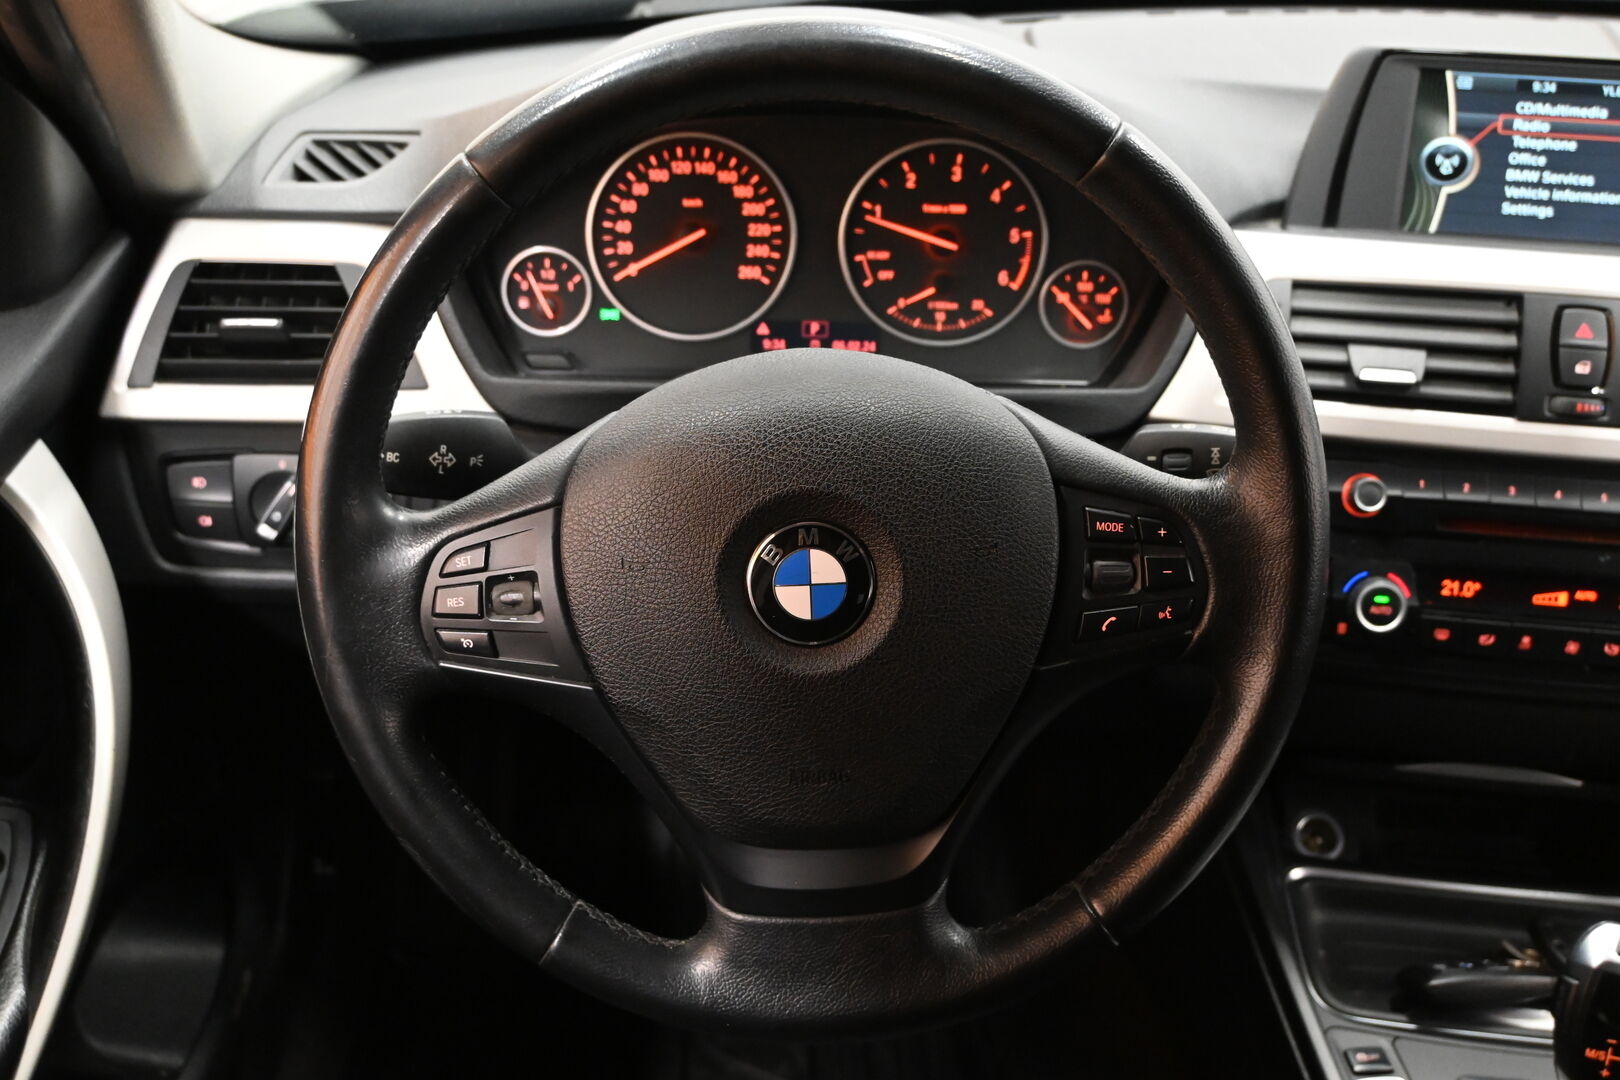 Musta Farmari, BMW 320 – MLR-729